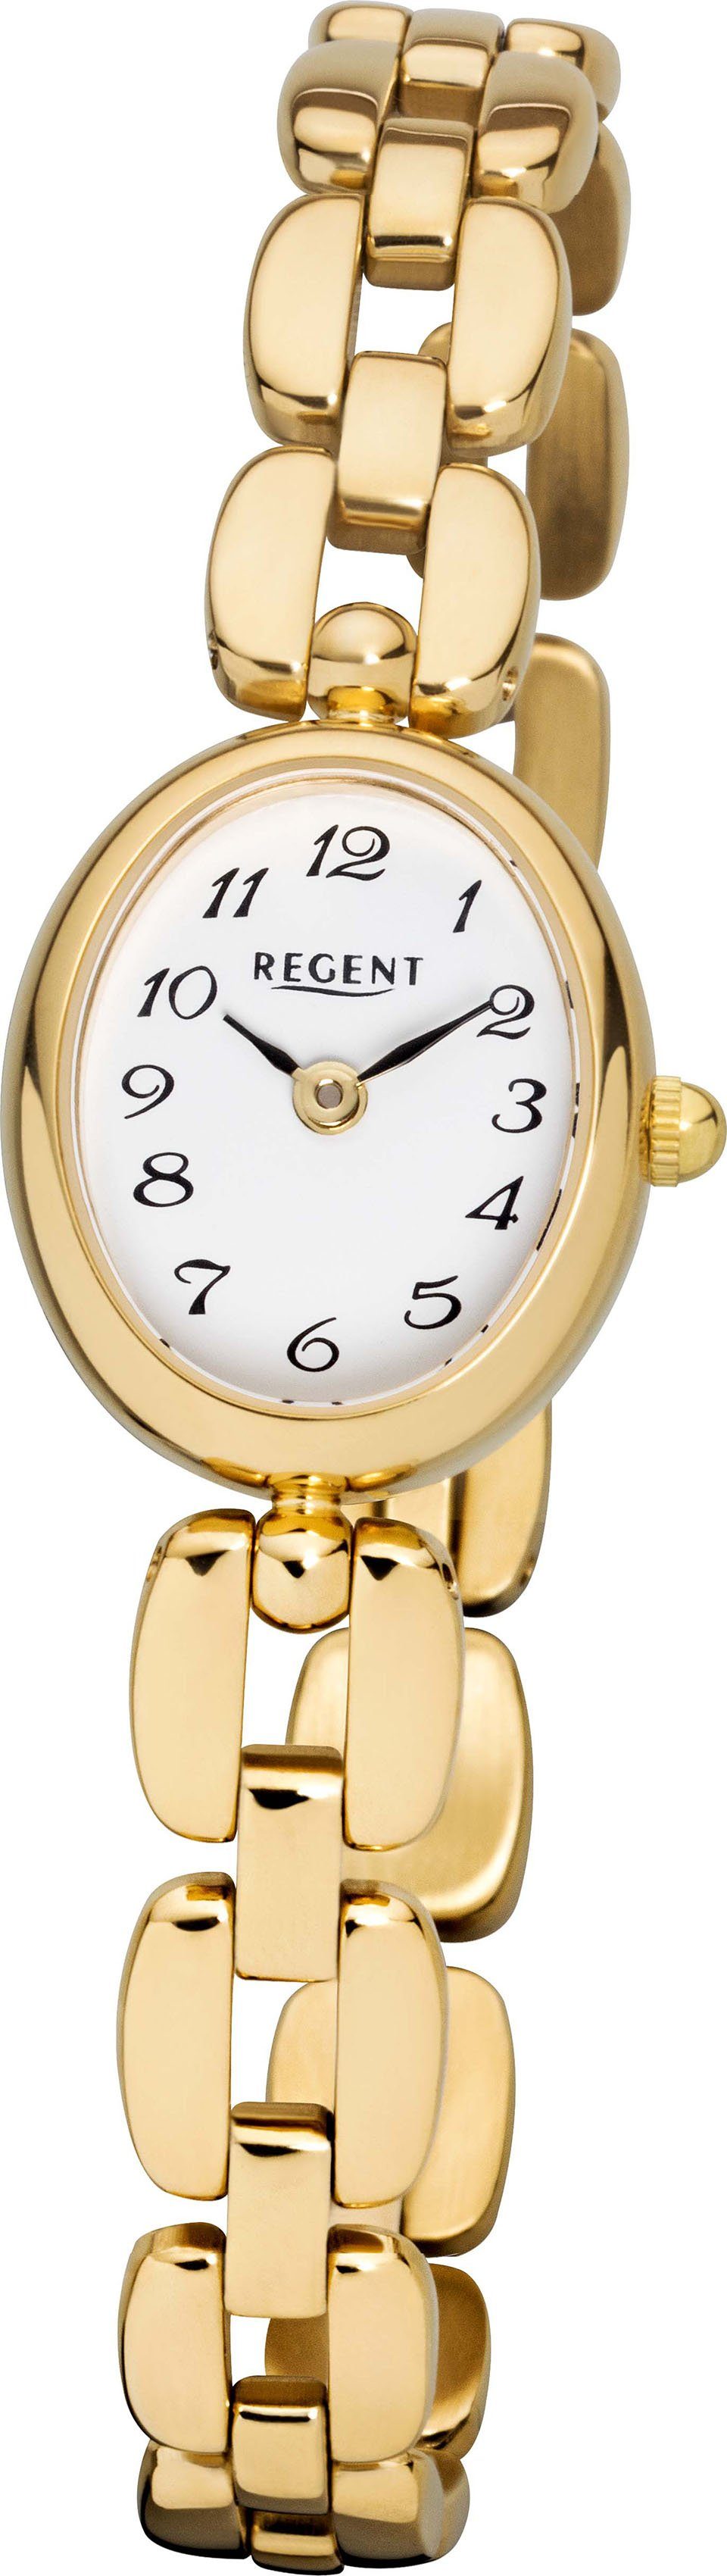 Regent Quarzuhr F-1406 - 3274.45.99, Armbanduhr, Damenuhr, Mineralglas